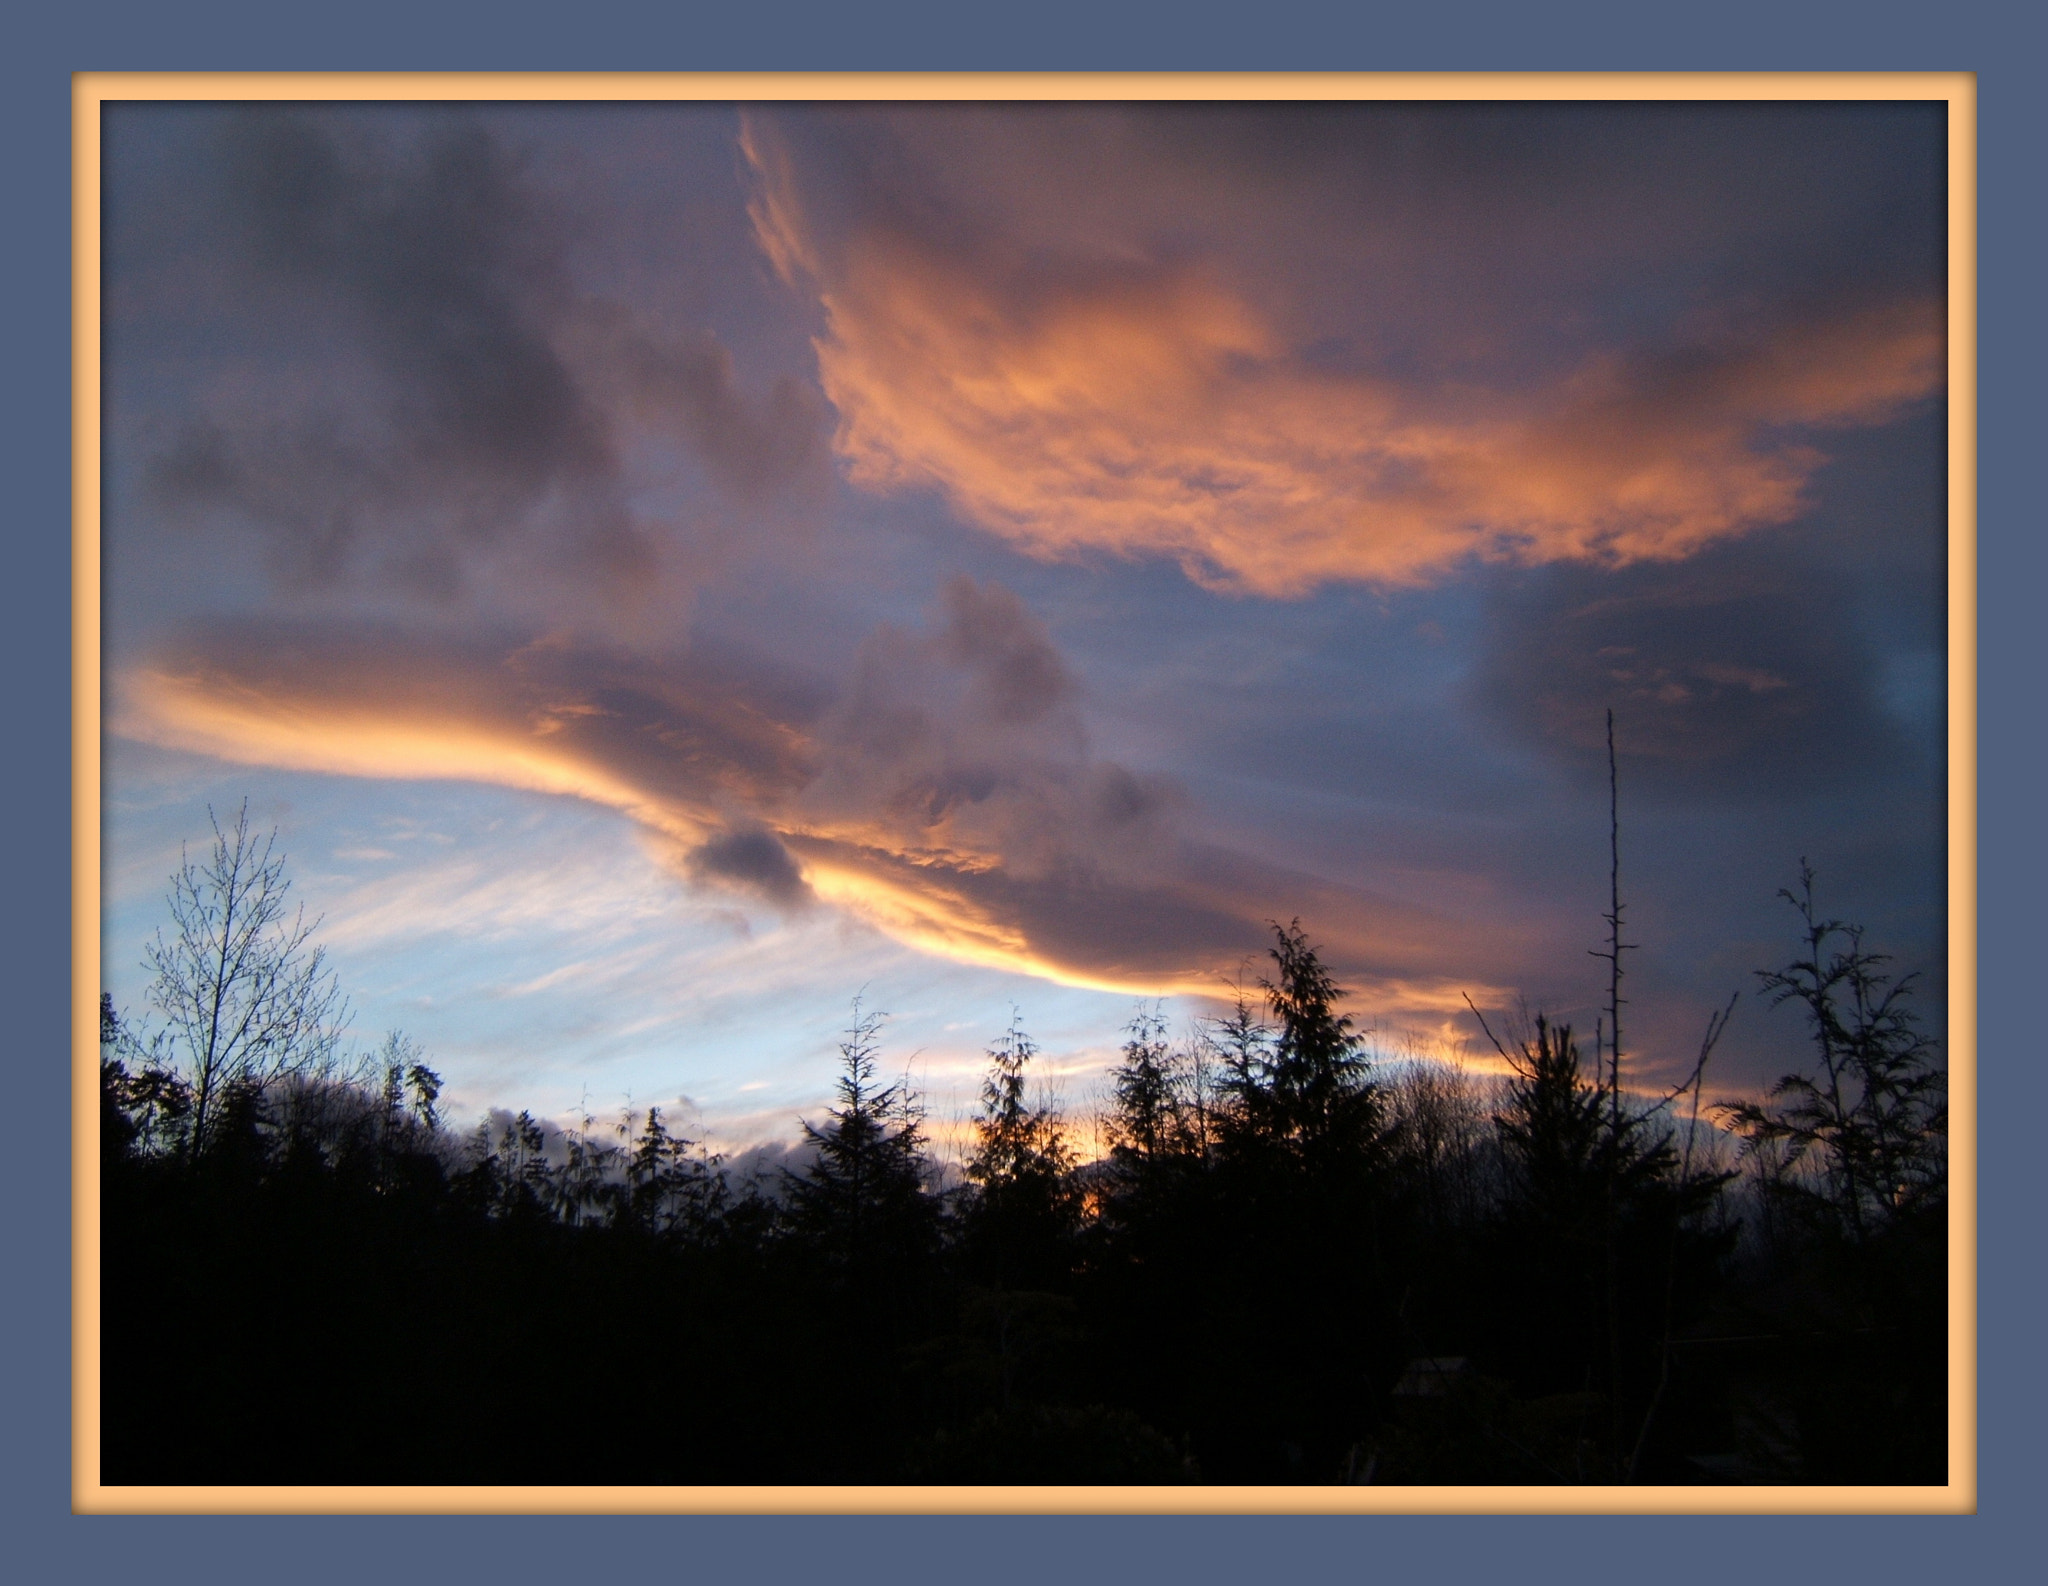 Fujifilm FinePix E510 sample photo. Sunset over mount washington, bc photography